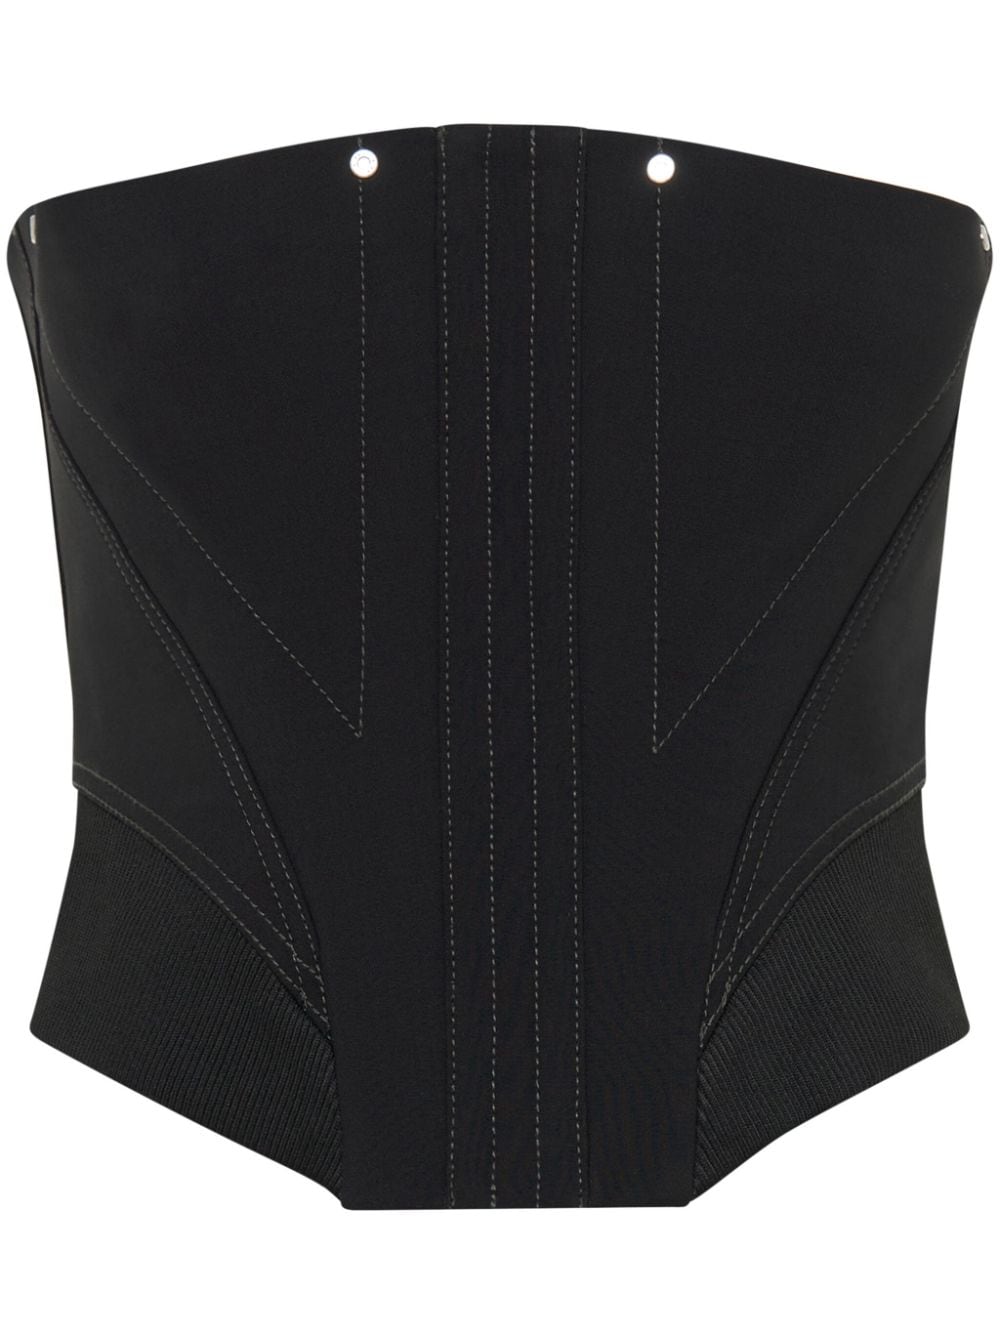 Dion Lee Construct Femme strapless corset top - Black von Dion Lee